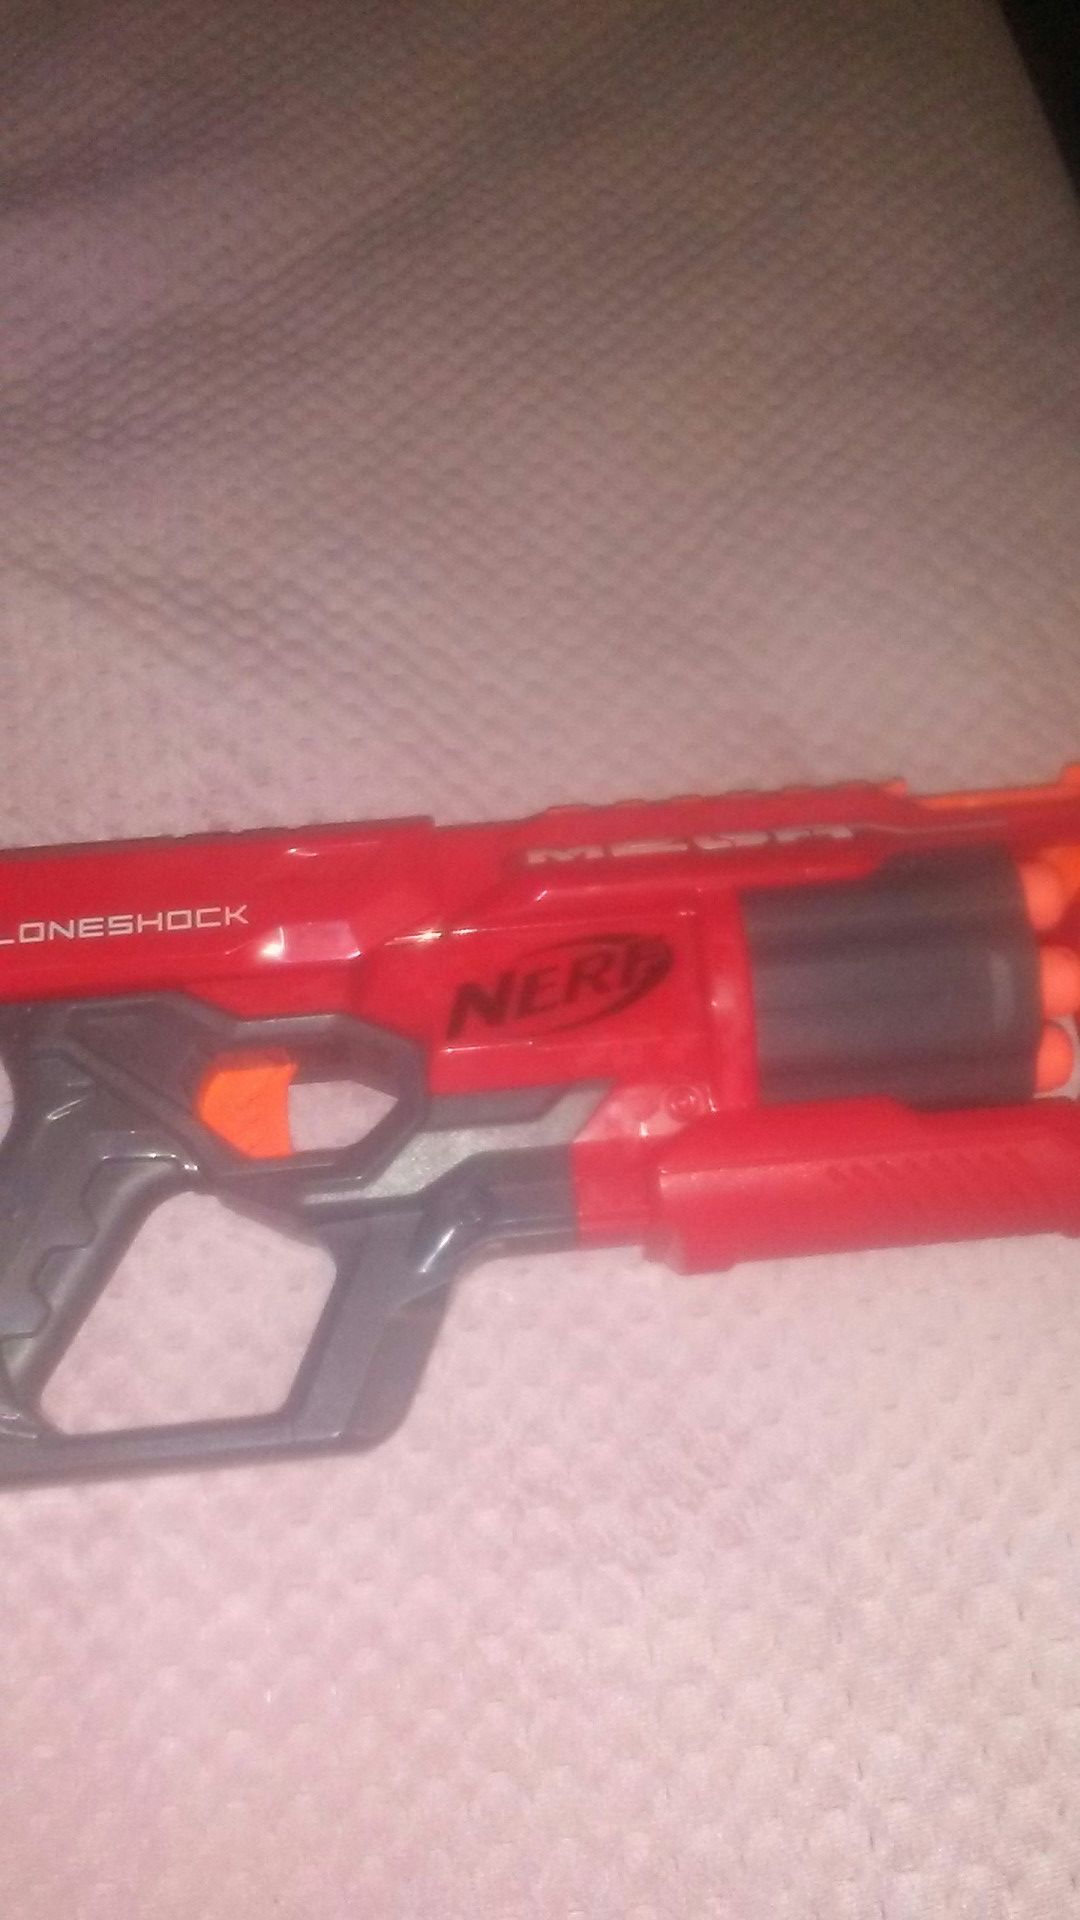 Brand new maga nerf gun toy